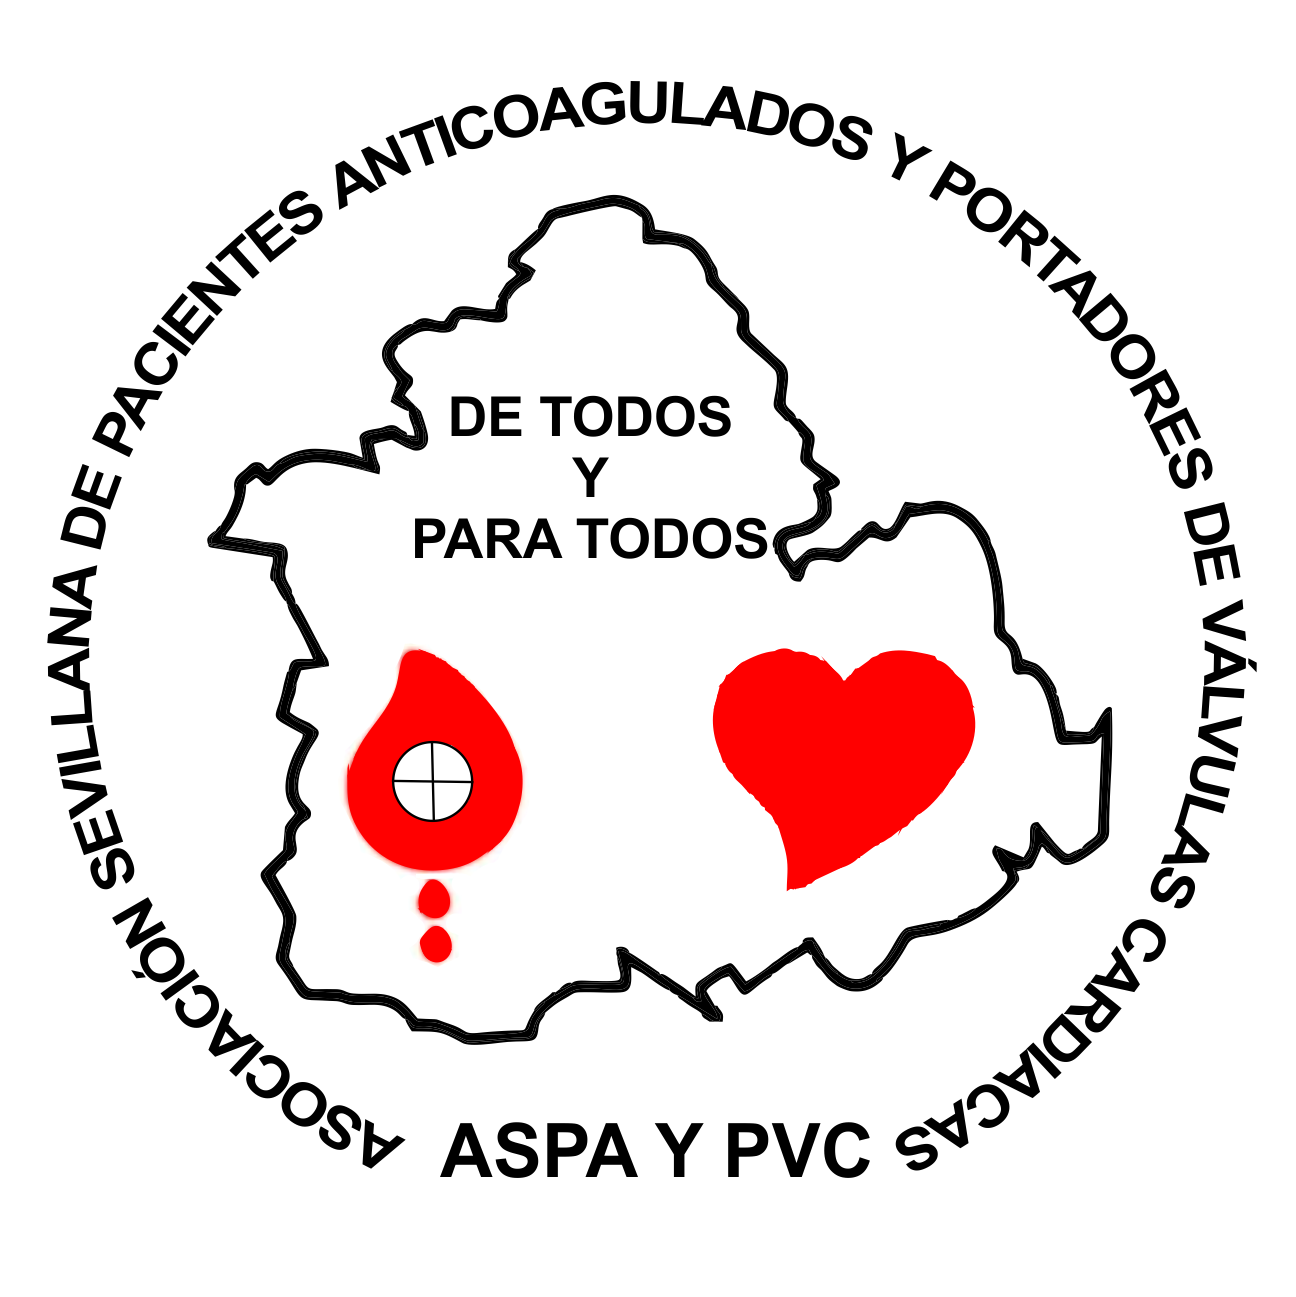 Asociación Sevillana de Pacientes Anticoagulados y Portadores de Válvulas Cardiacas. ASPYPVC MISIÓN: Hacer valer los derechos de los pacientes anticoagulados